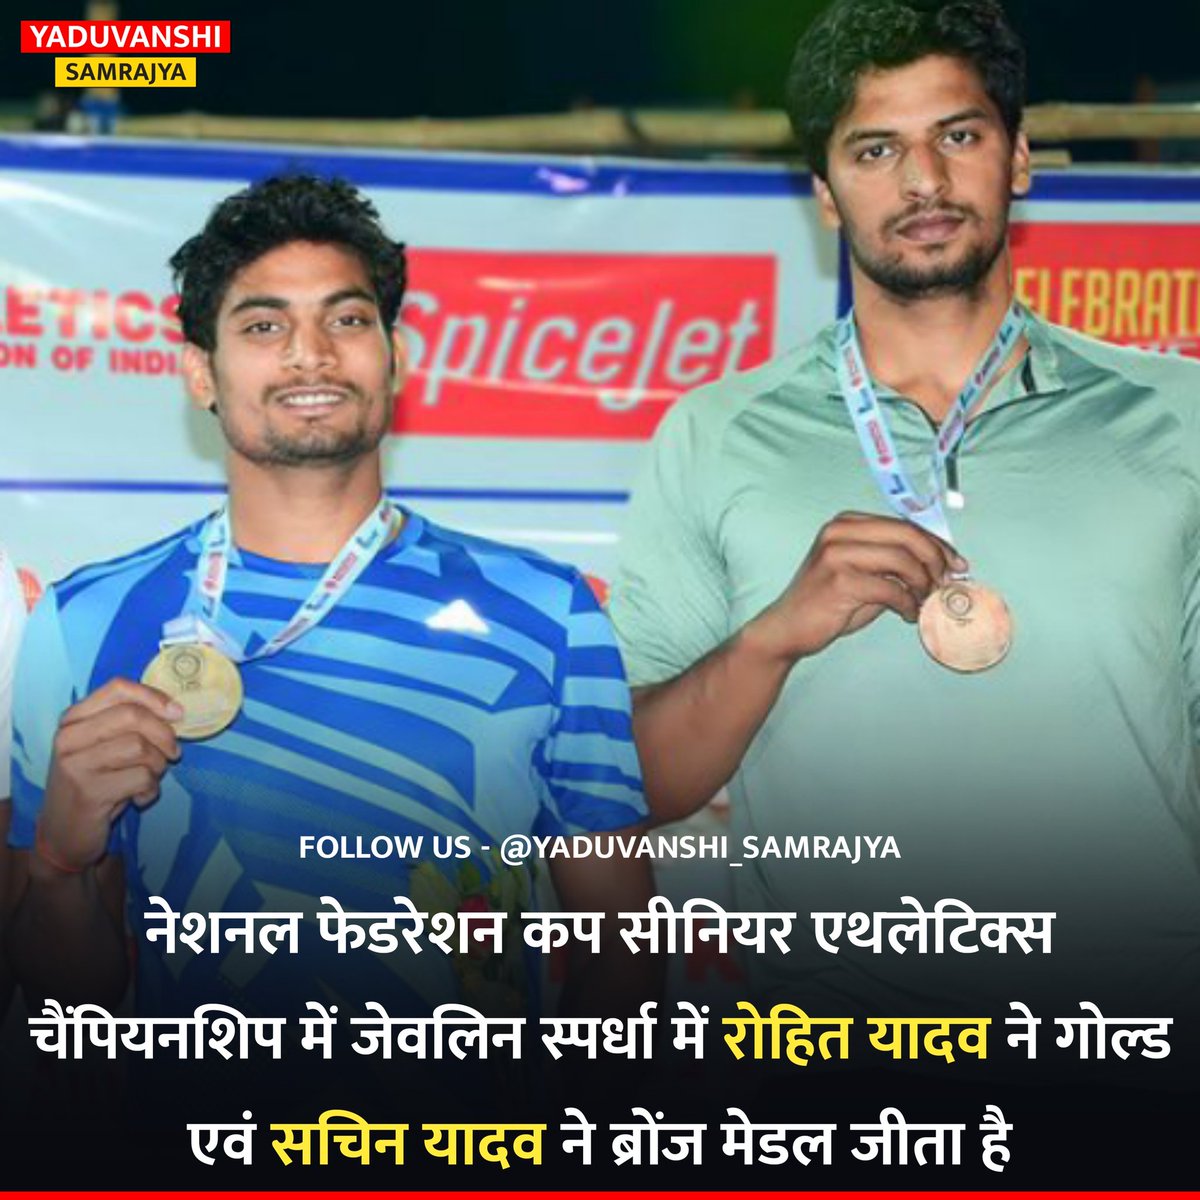 नेशनल फेडरेशन कप सीनियर एथलेटिक्स चैंपियनशिप में जेवलिन स्पर्धा में रोहित यादव ने गोल्ड एवं सचिन यादव ने ब्रोंज मेडल जीता है।

#JavelinThrow